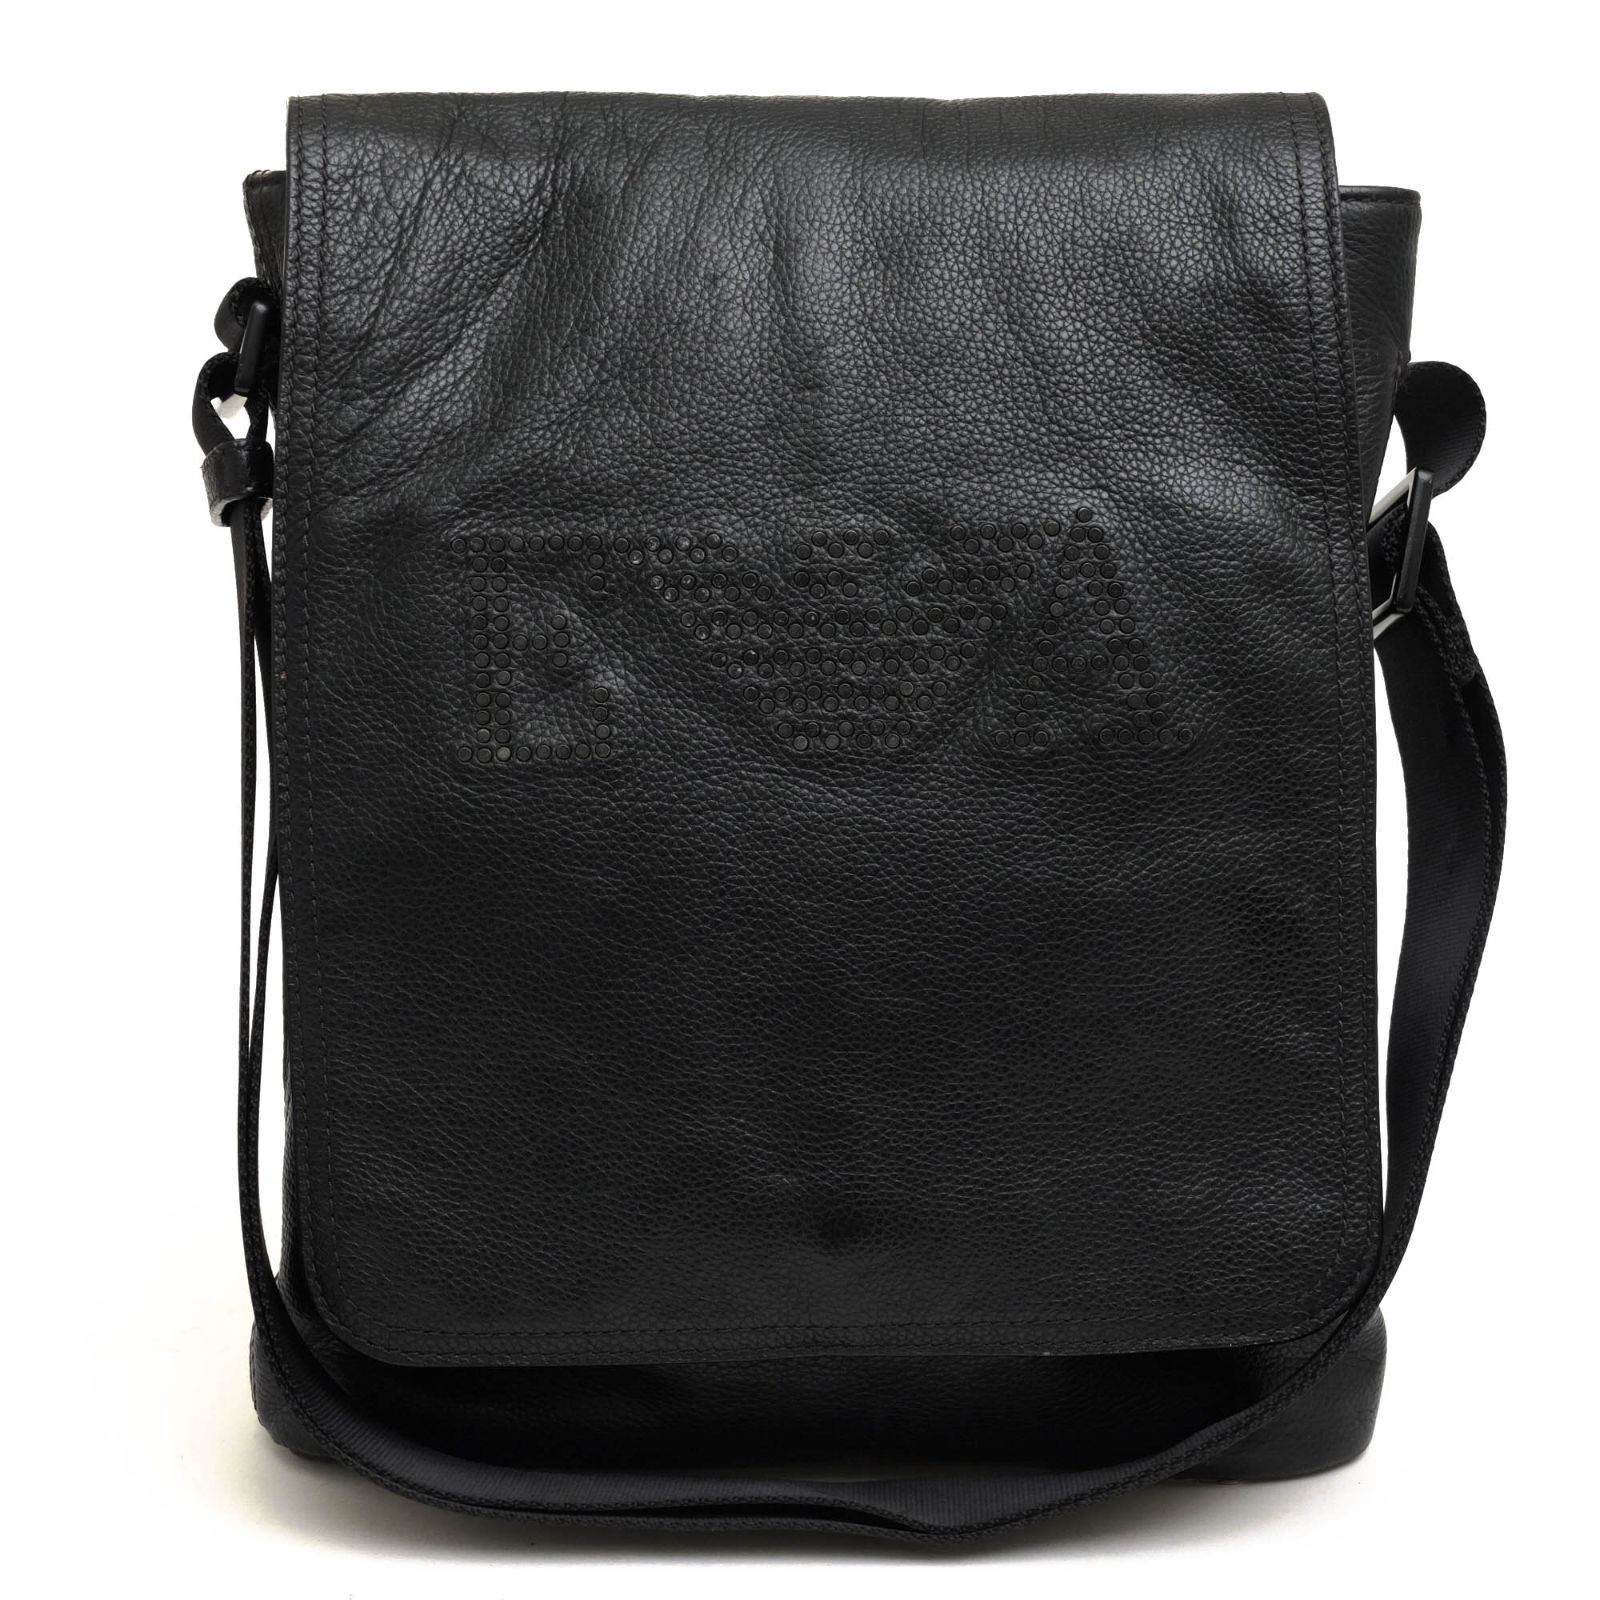 アルマーニ／EMPORIO ARMANI バッグ ショルダーバッグ 鞄 メンズ 男性 男性用レザー 革 本革 ブラック 黒  YEM553 YCB72 イーグルロゴ ボディバッグ メッセンジャーバッグ